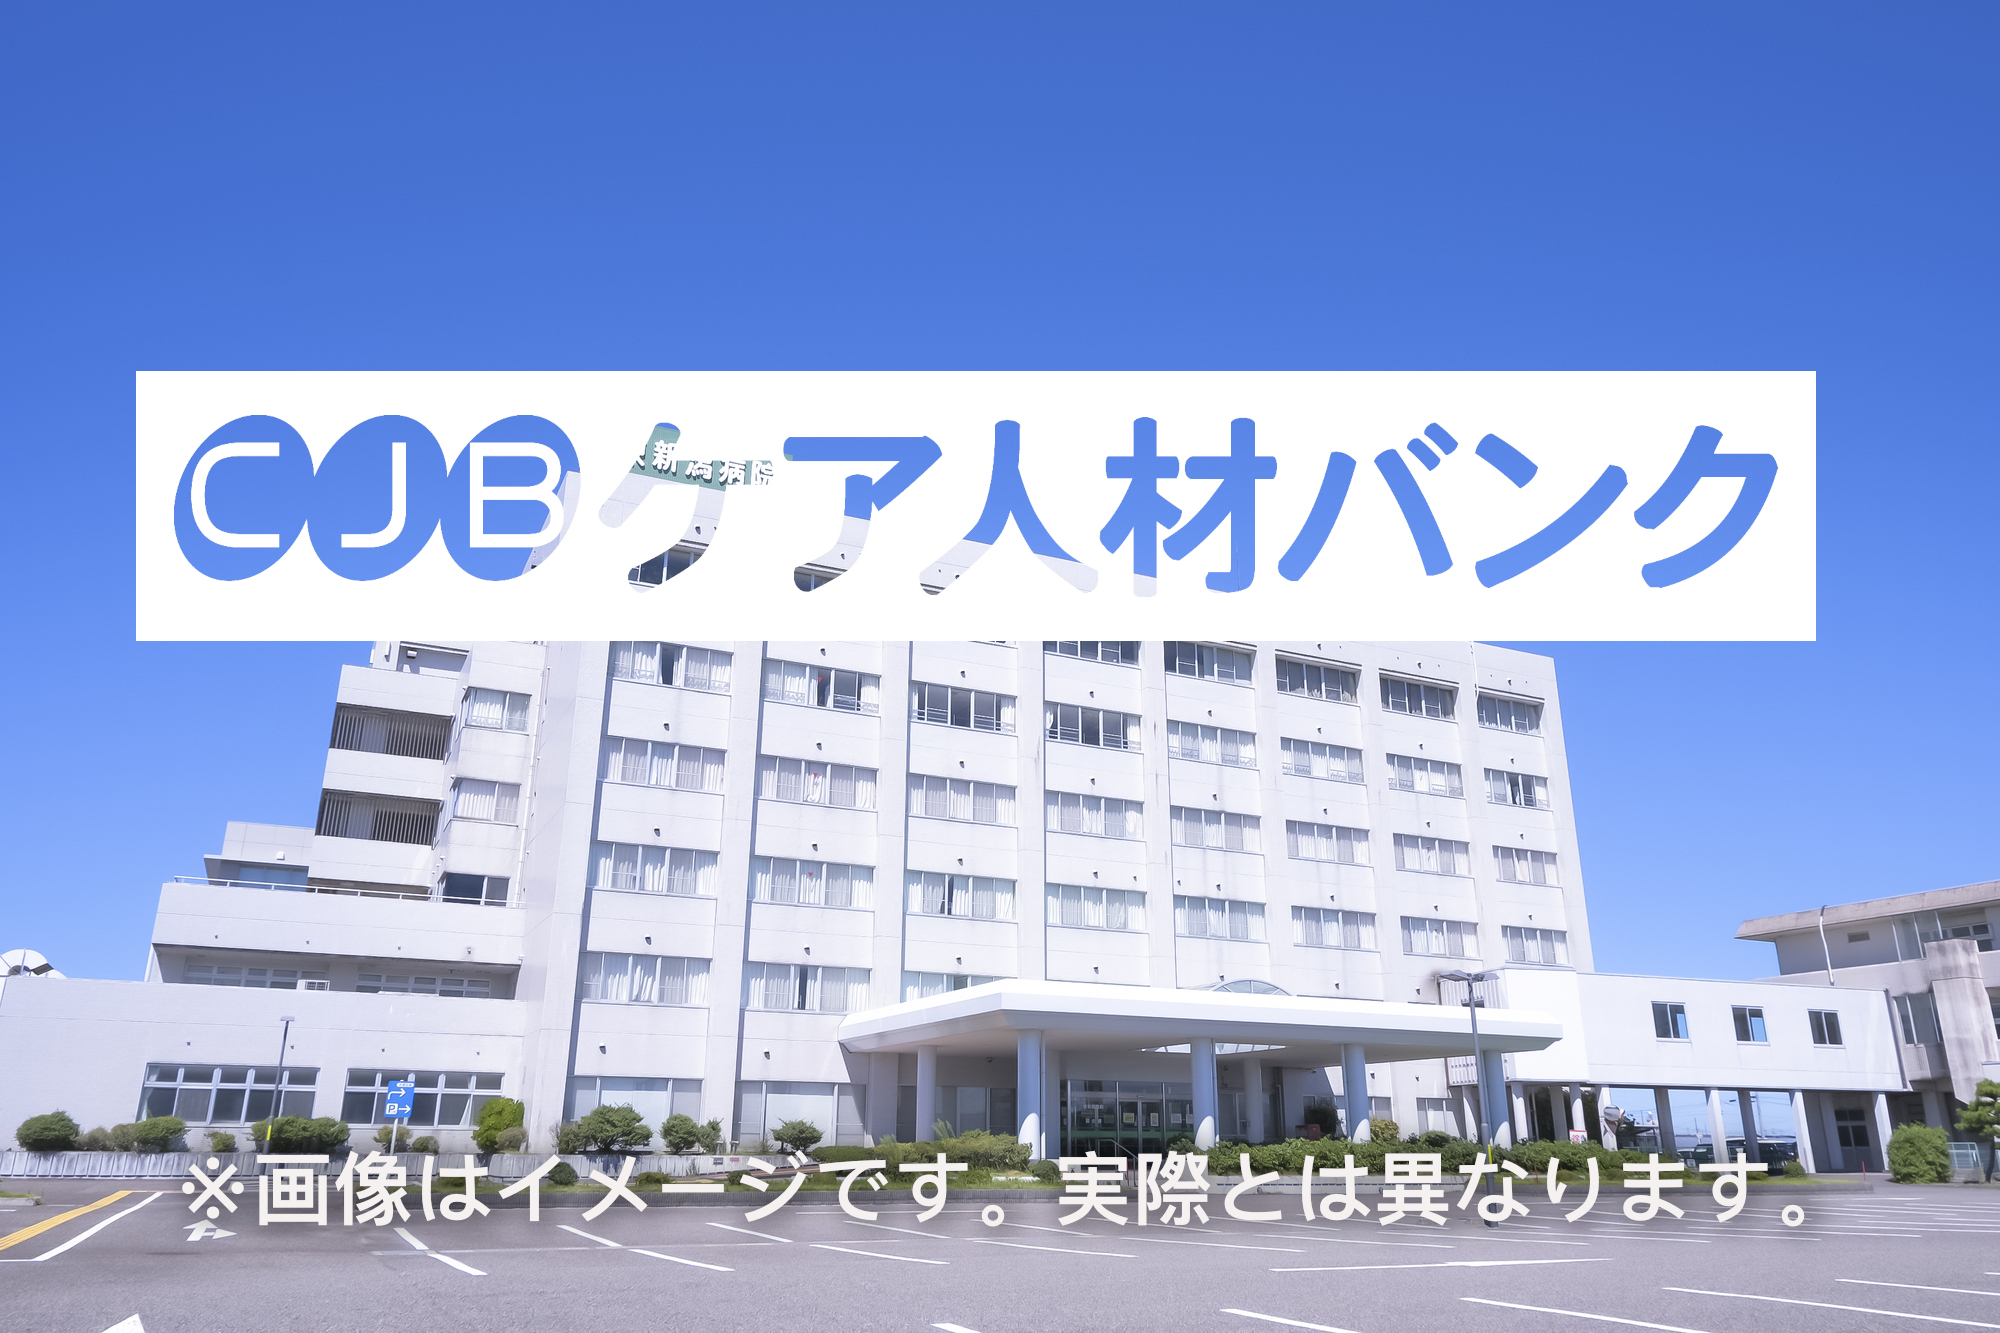 相州病院 のイメージ画像